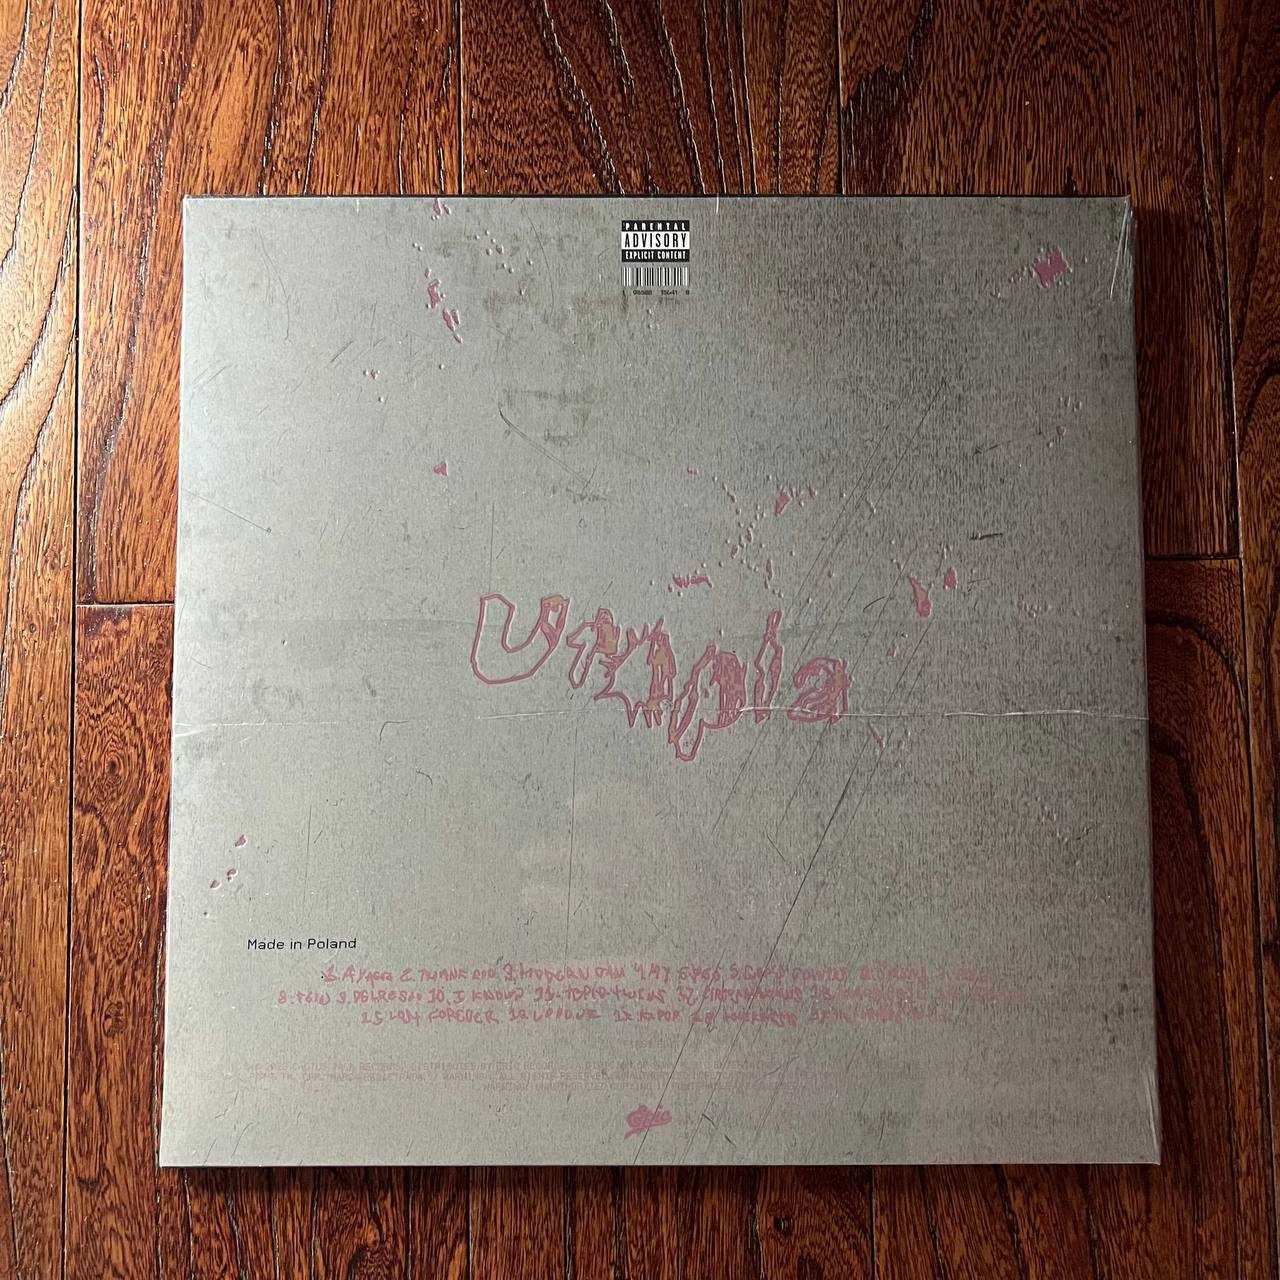 Travis Scott - Utopia Cover 1 Виниловая пластинка